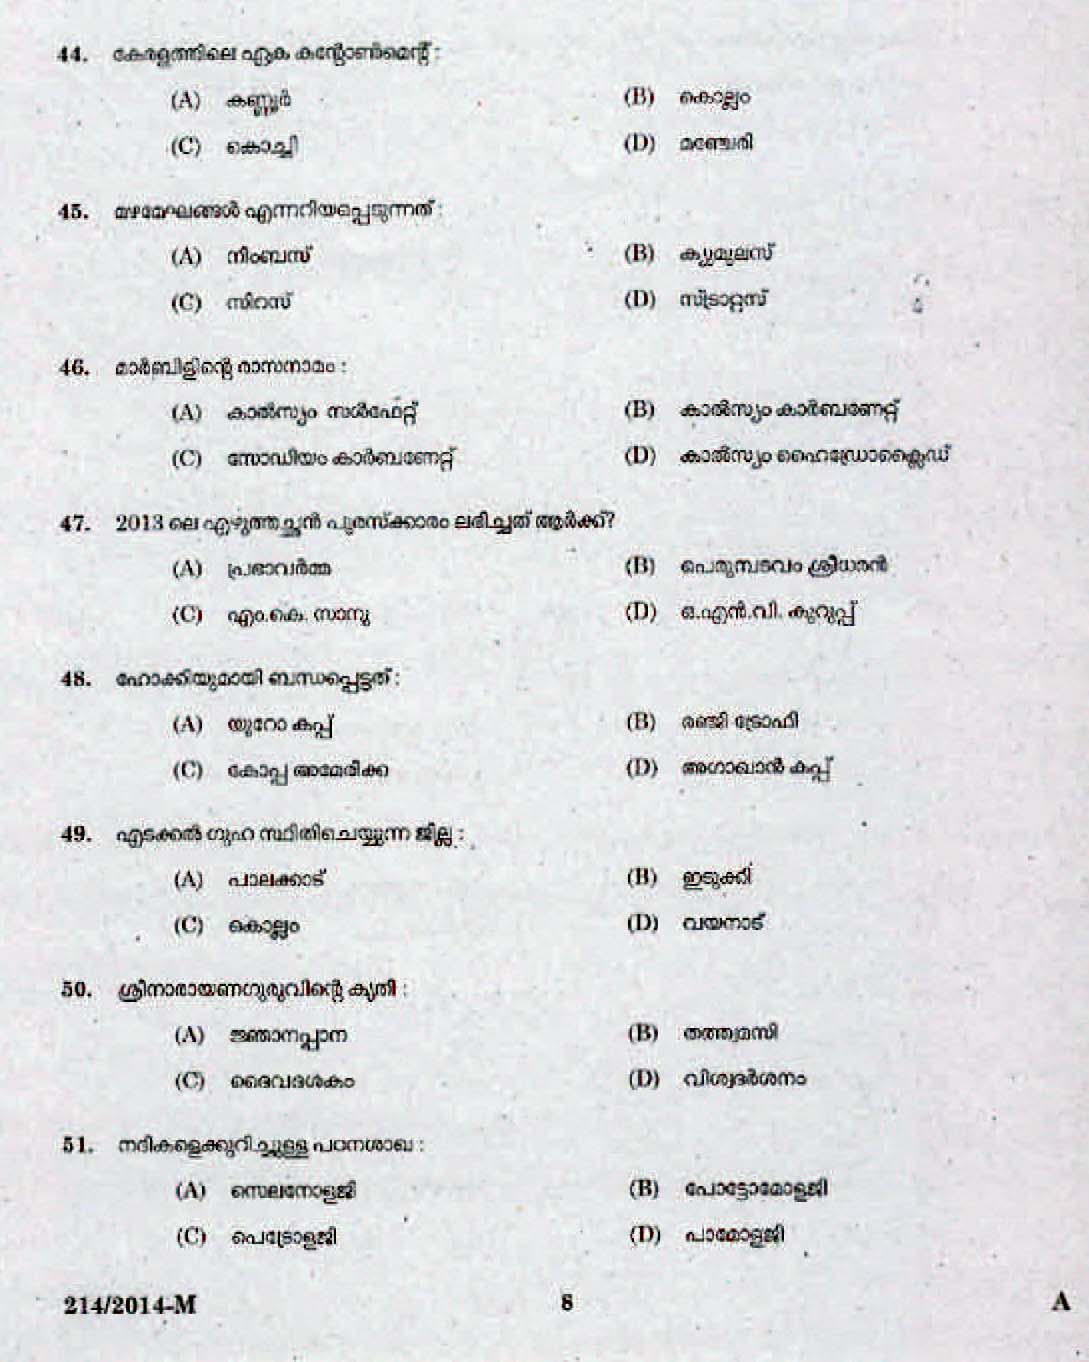 Kerala Last Grade Servants Exam 2014 Question Paper Code 2142014 M 6